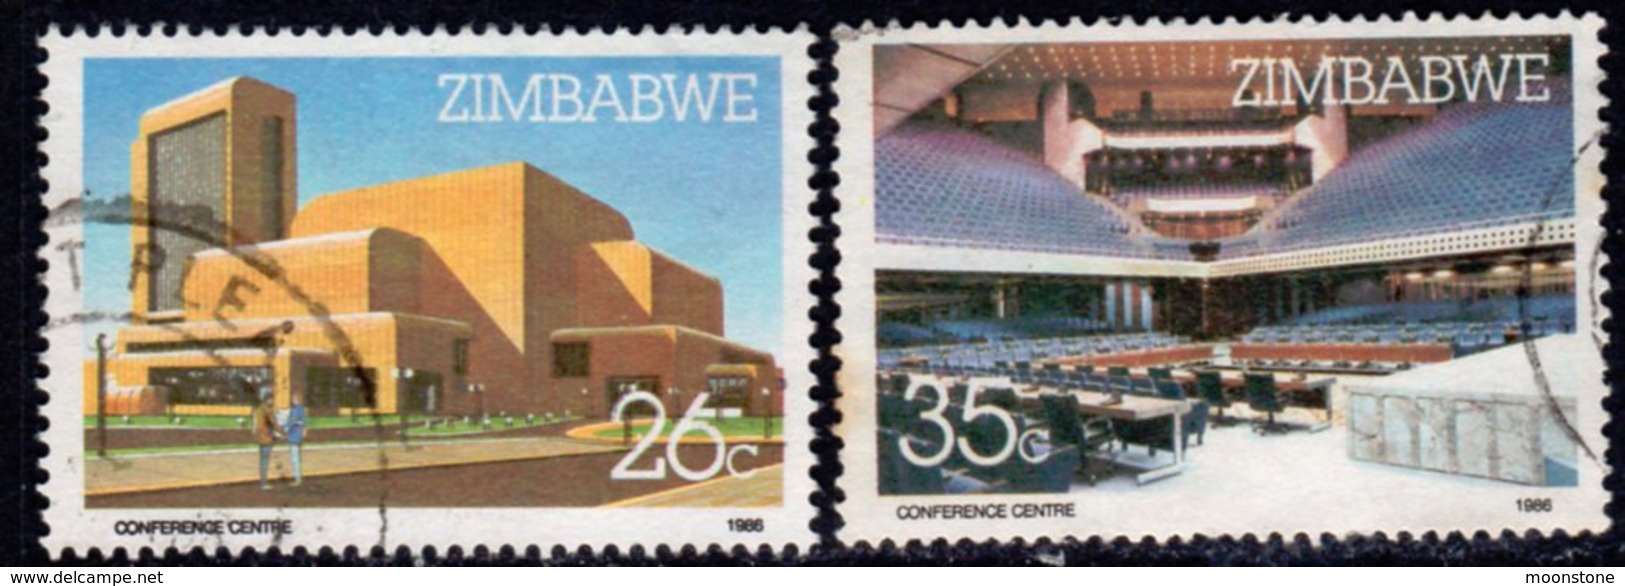 Zimbabwe 1986 Harare International Conference Centre Set Of 2, Used, SG 688/9 (BA2) - Zimbabwe (1980-...)